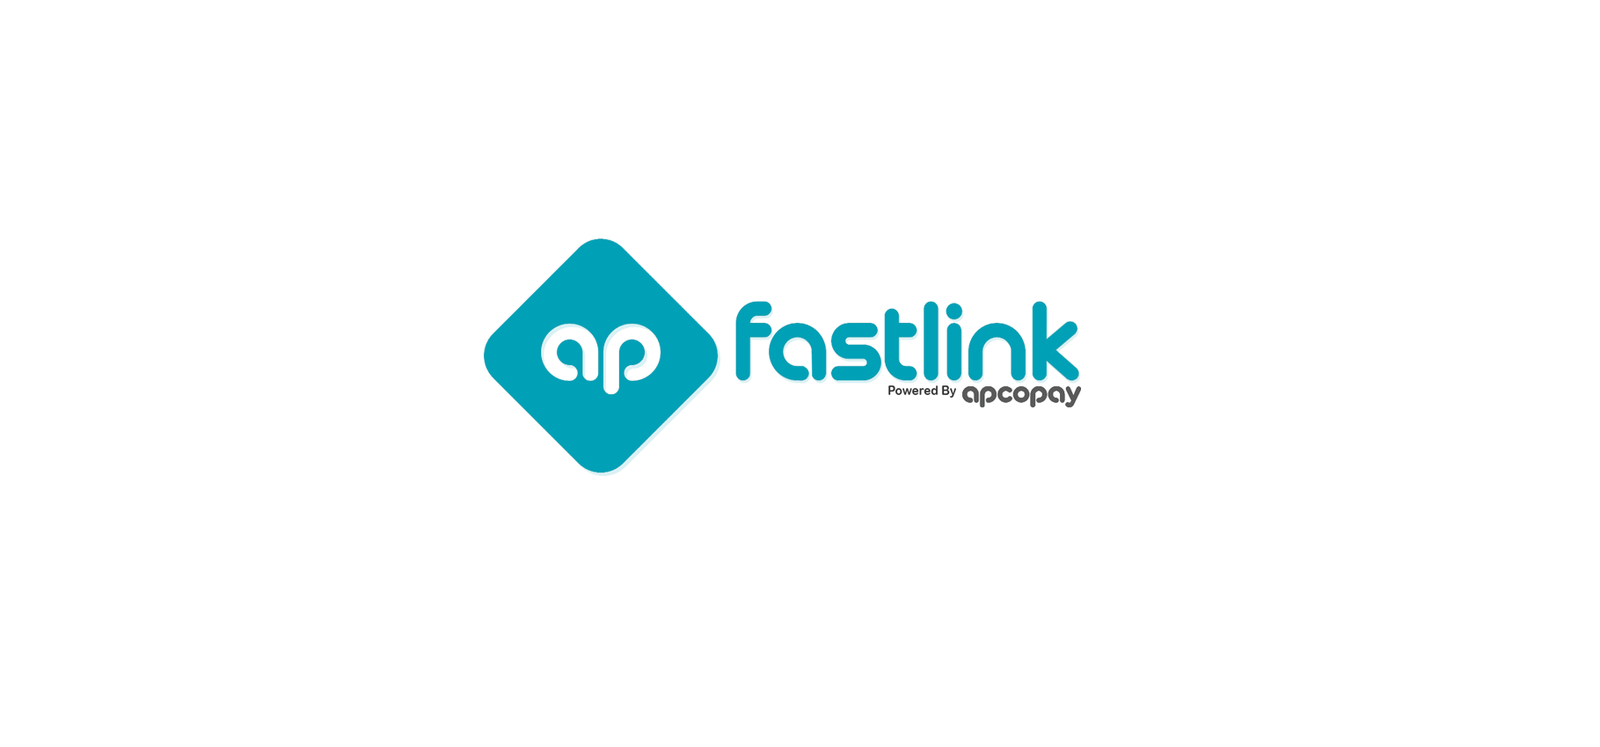 Fastlink